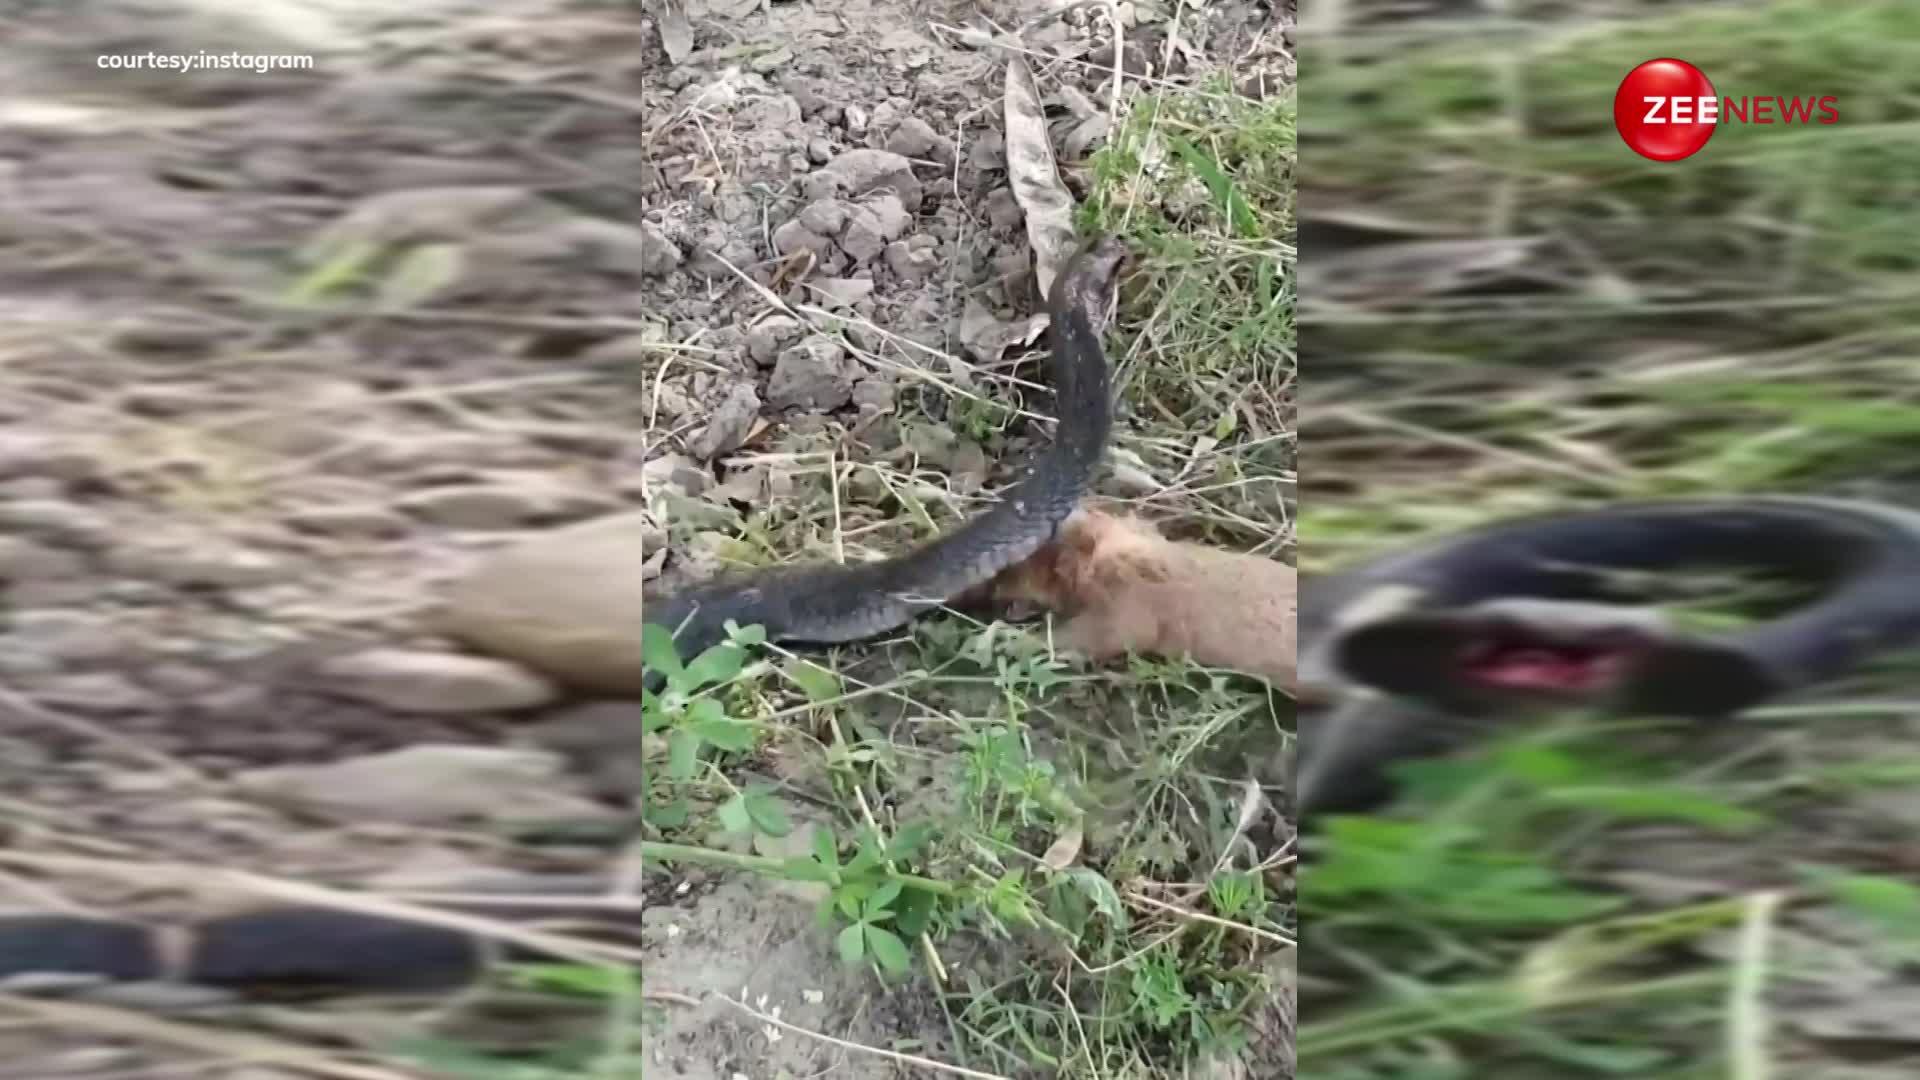 King Cobra से भिड़ गया छोटा सा नेवला, नेवले और सांप की खूनी लड़ाई का वीडियो हुआ वायरल